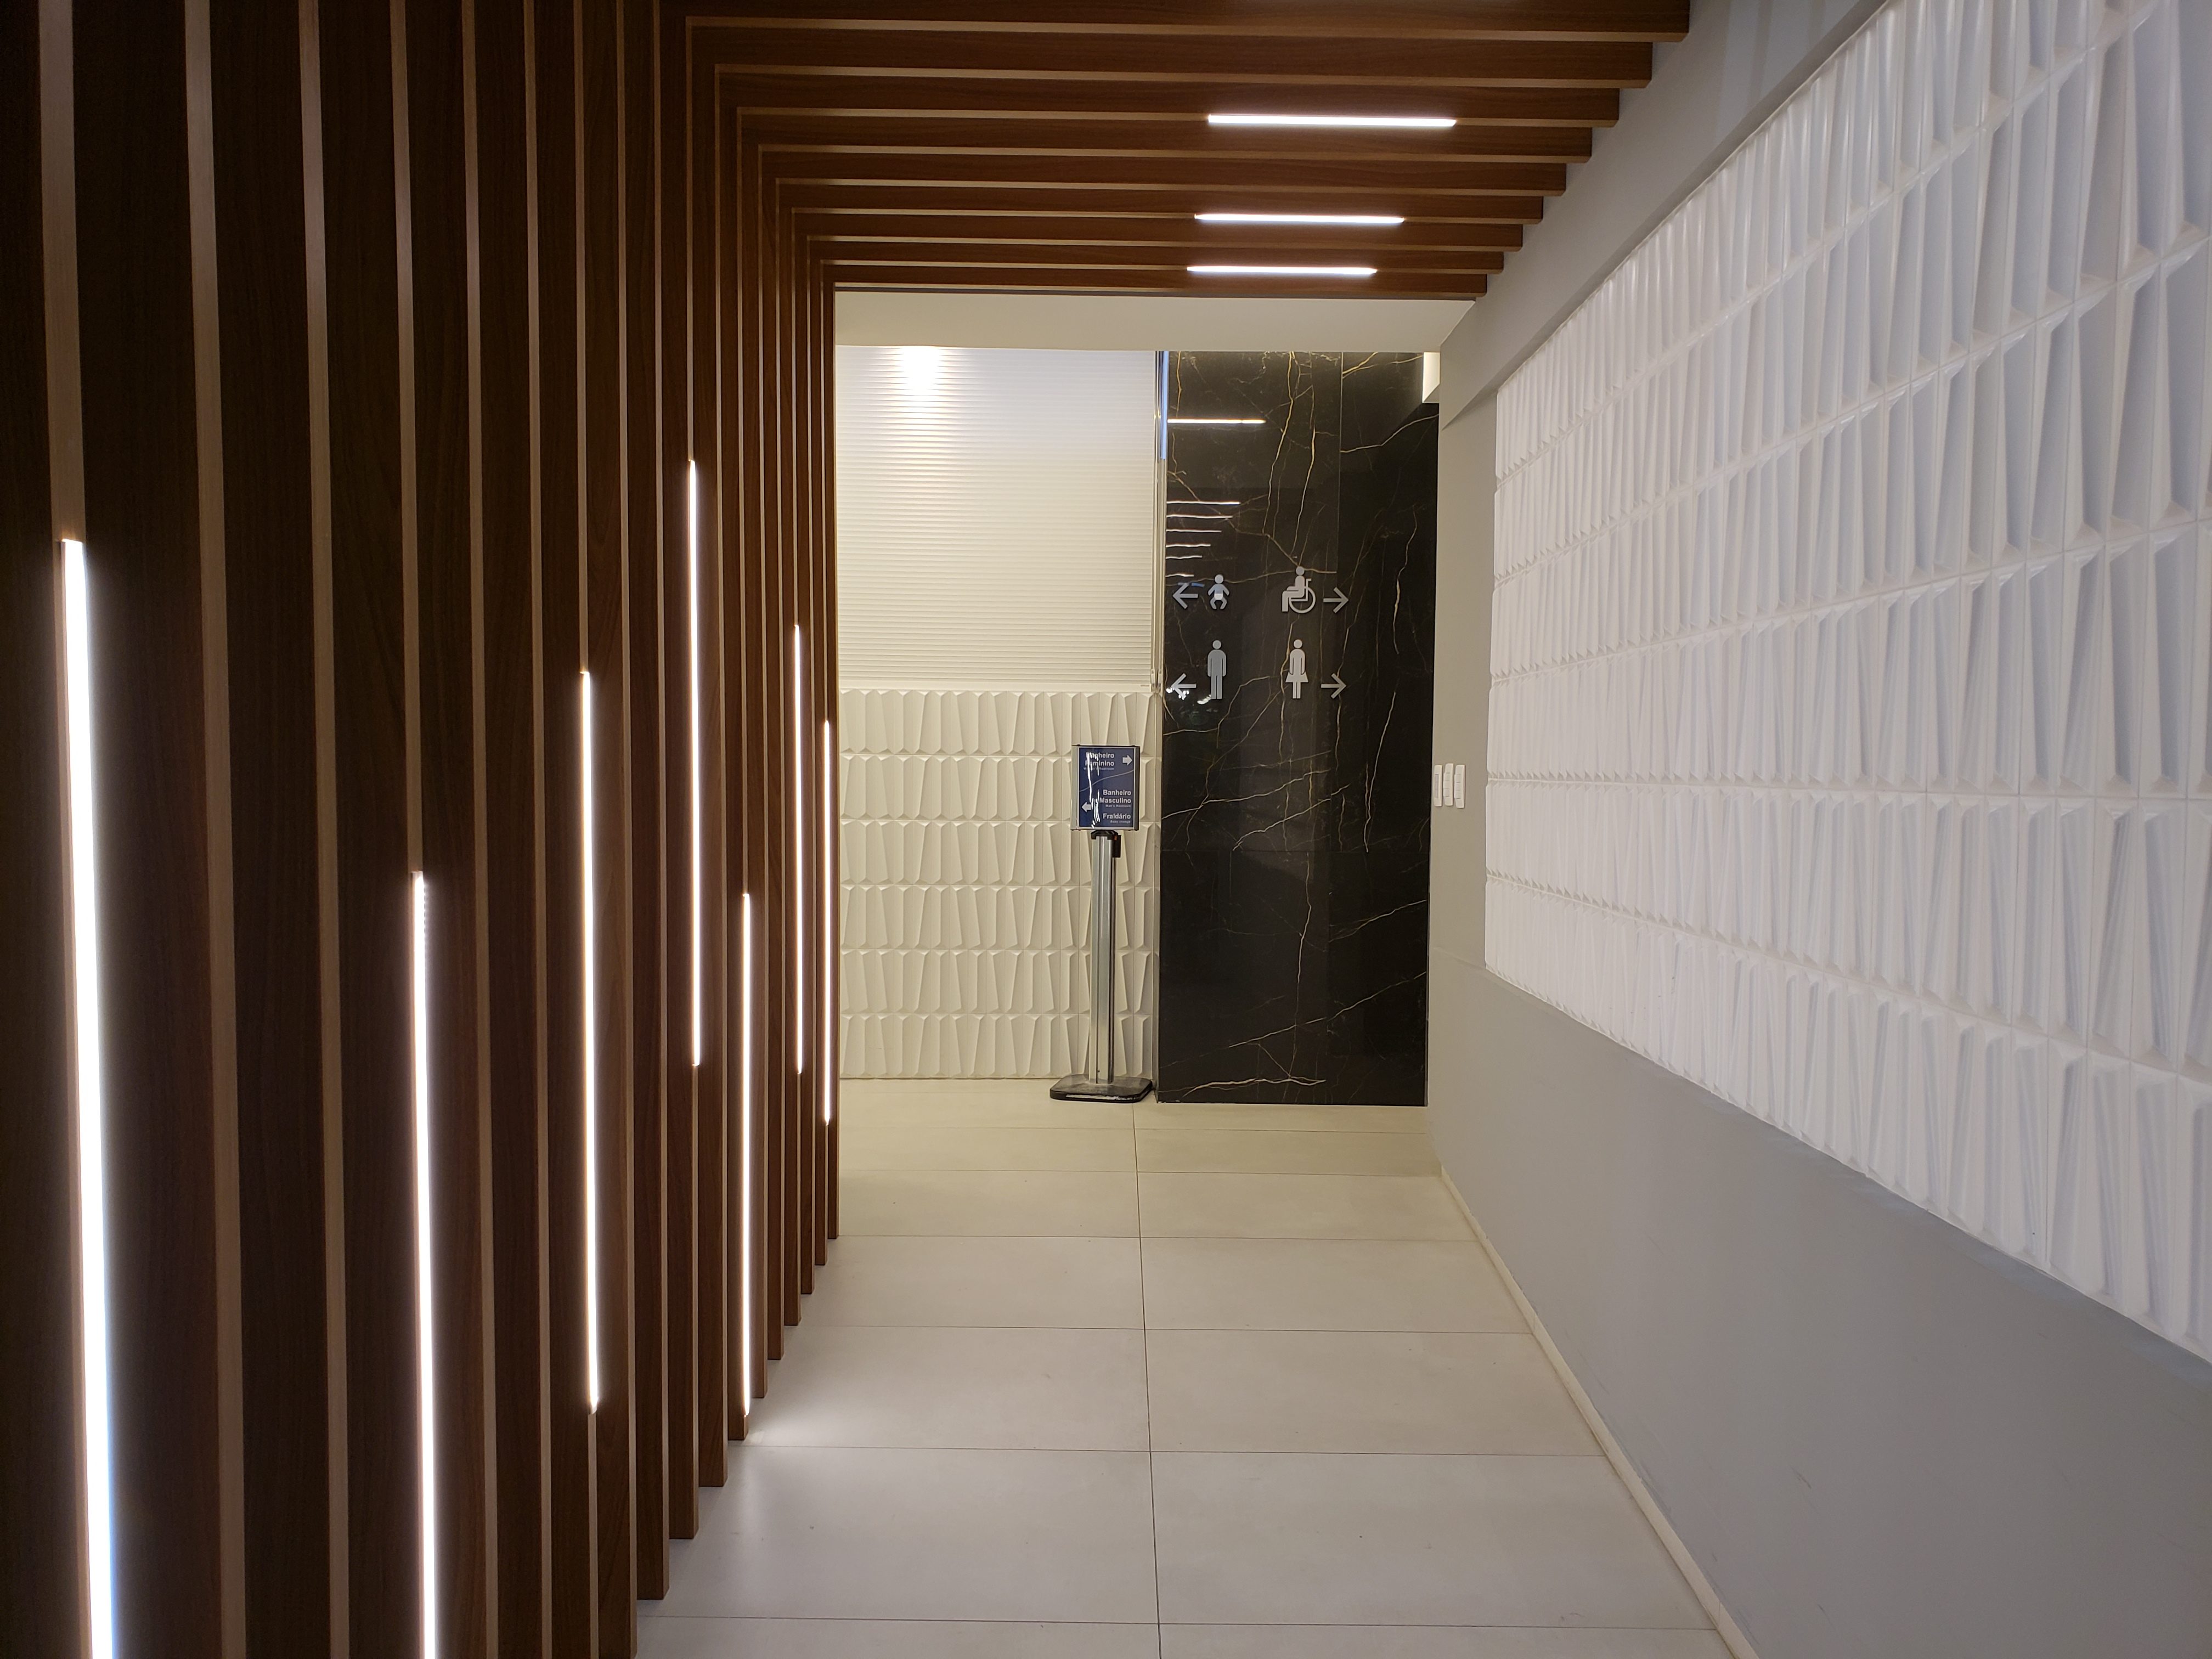 Hall de acesso aos novos banheiros do Aeroporto Internacional de Florianópolis. No piso, porcelanato natural da linha Superquadrada (Portobello) e na parede do hall, porcelanato decorativo Madam MAatt White, da Linha 3D Lab (Portobello). Foto: Floripa Airport/Divulgação